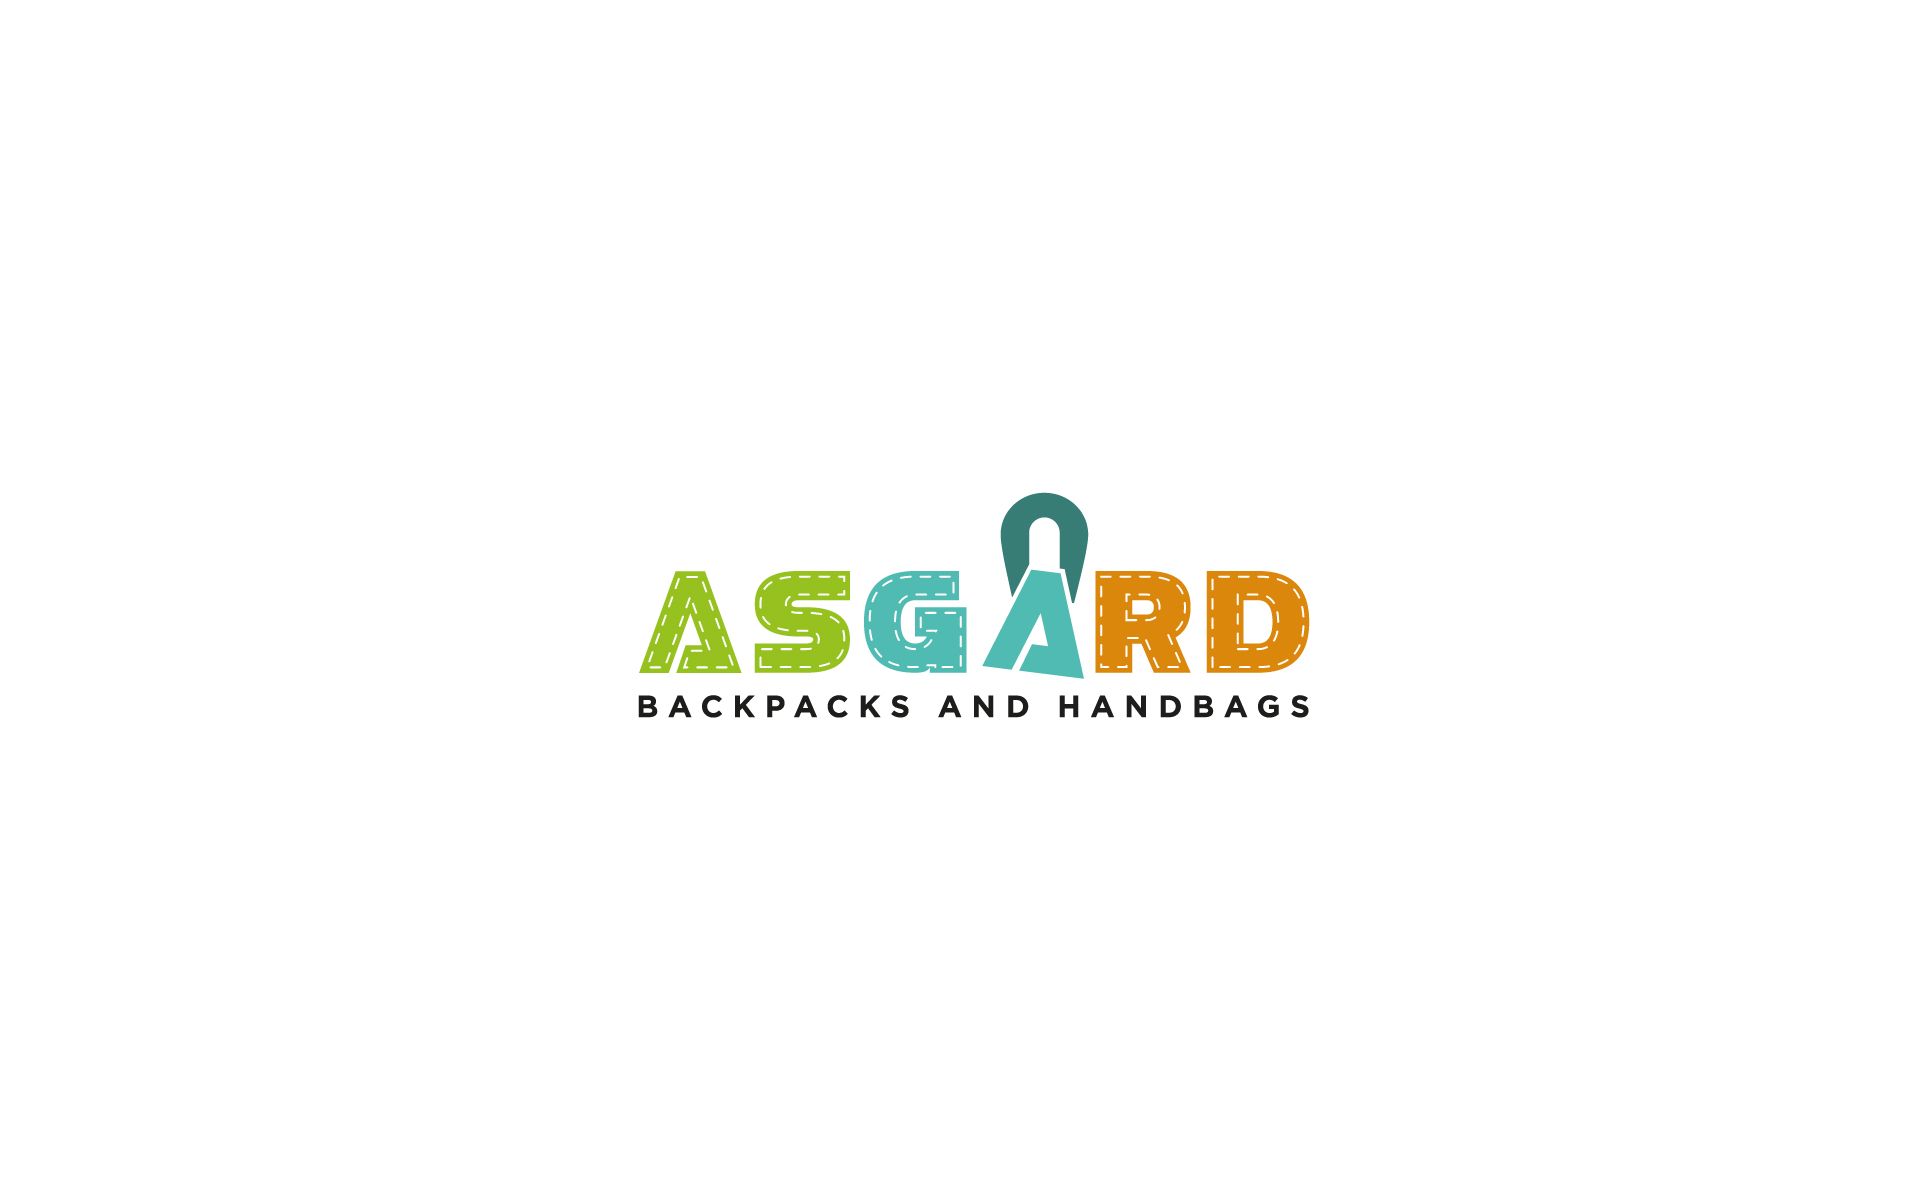 Логотип для рюкзаков и сумок ASGARD - дизайнер U4po4mak